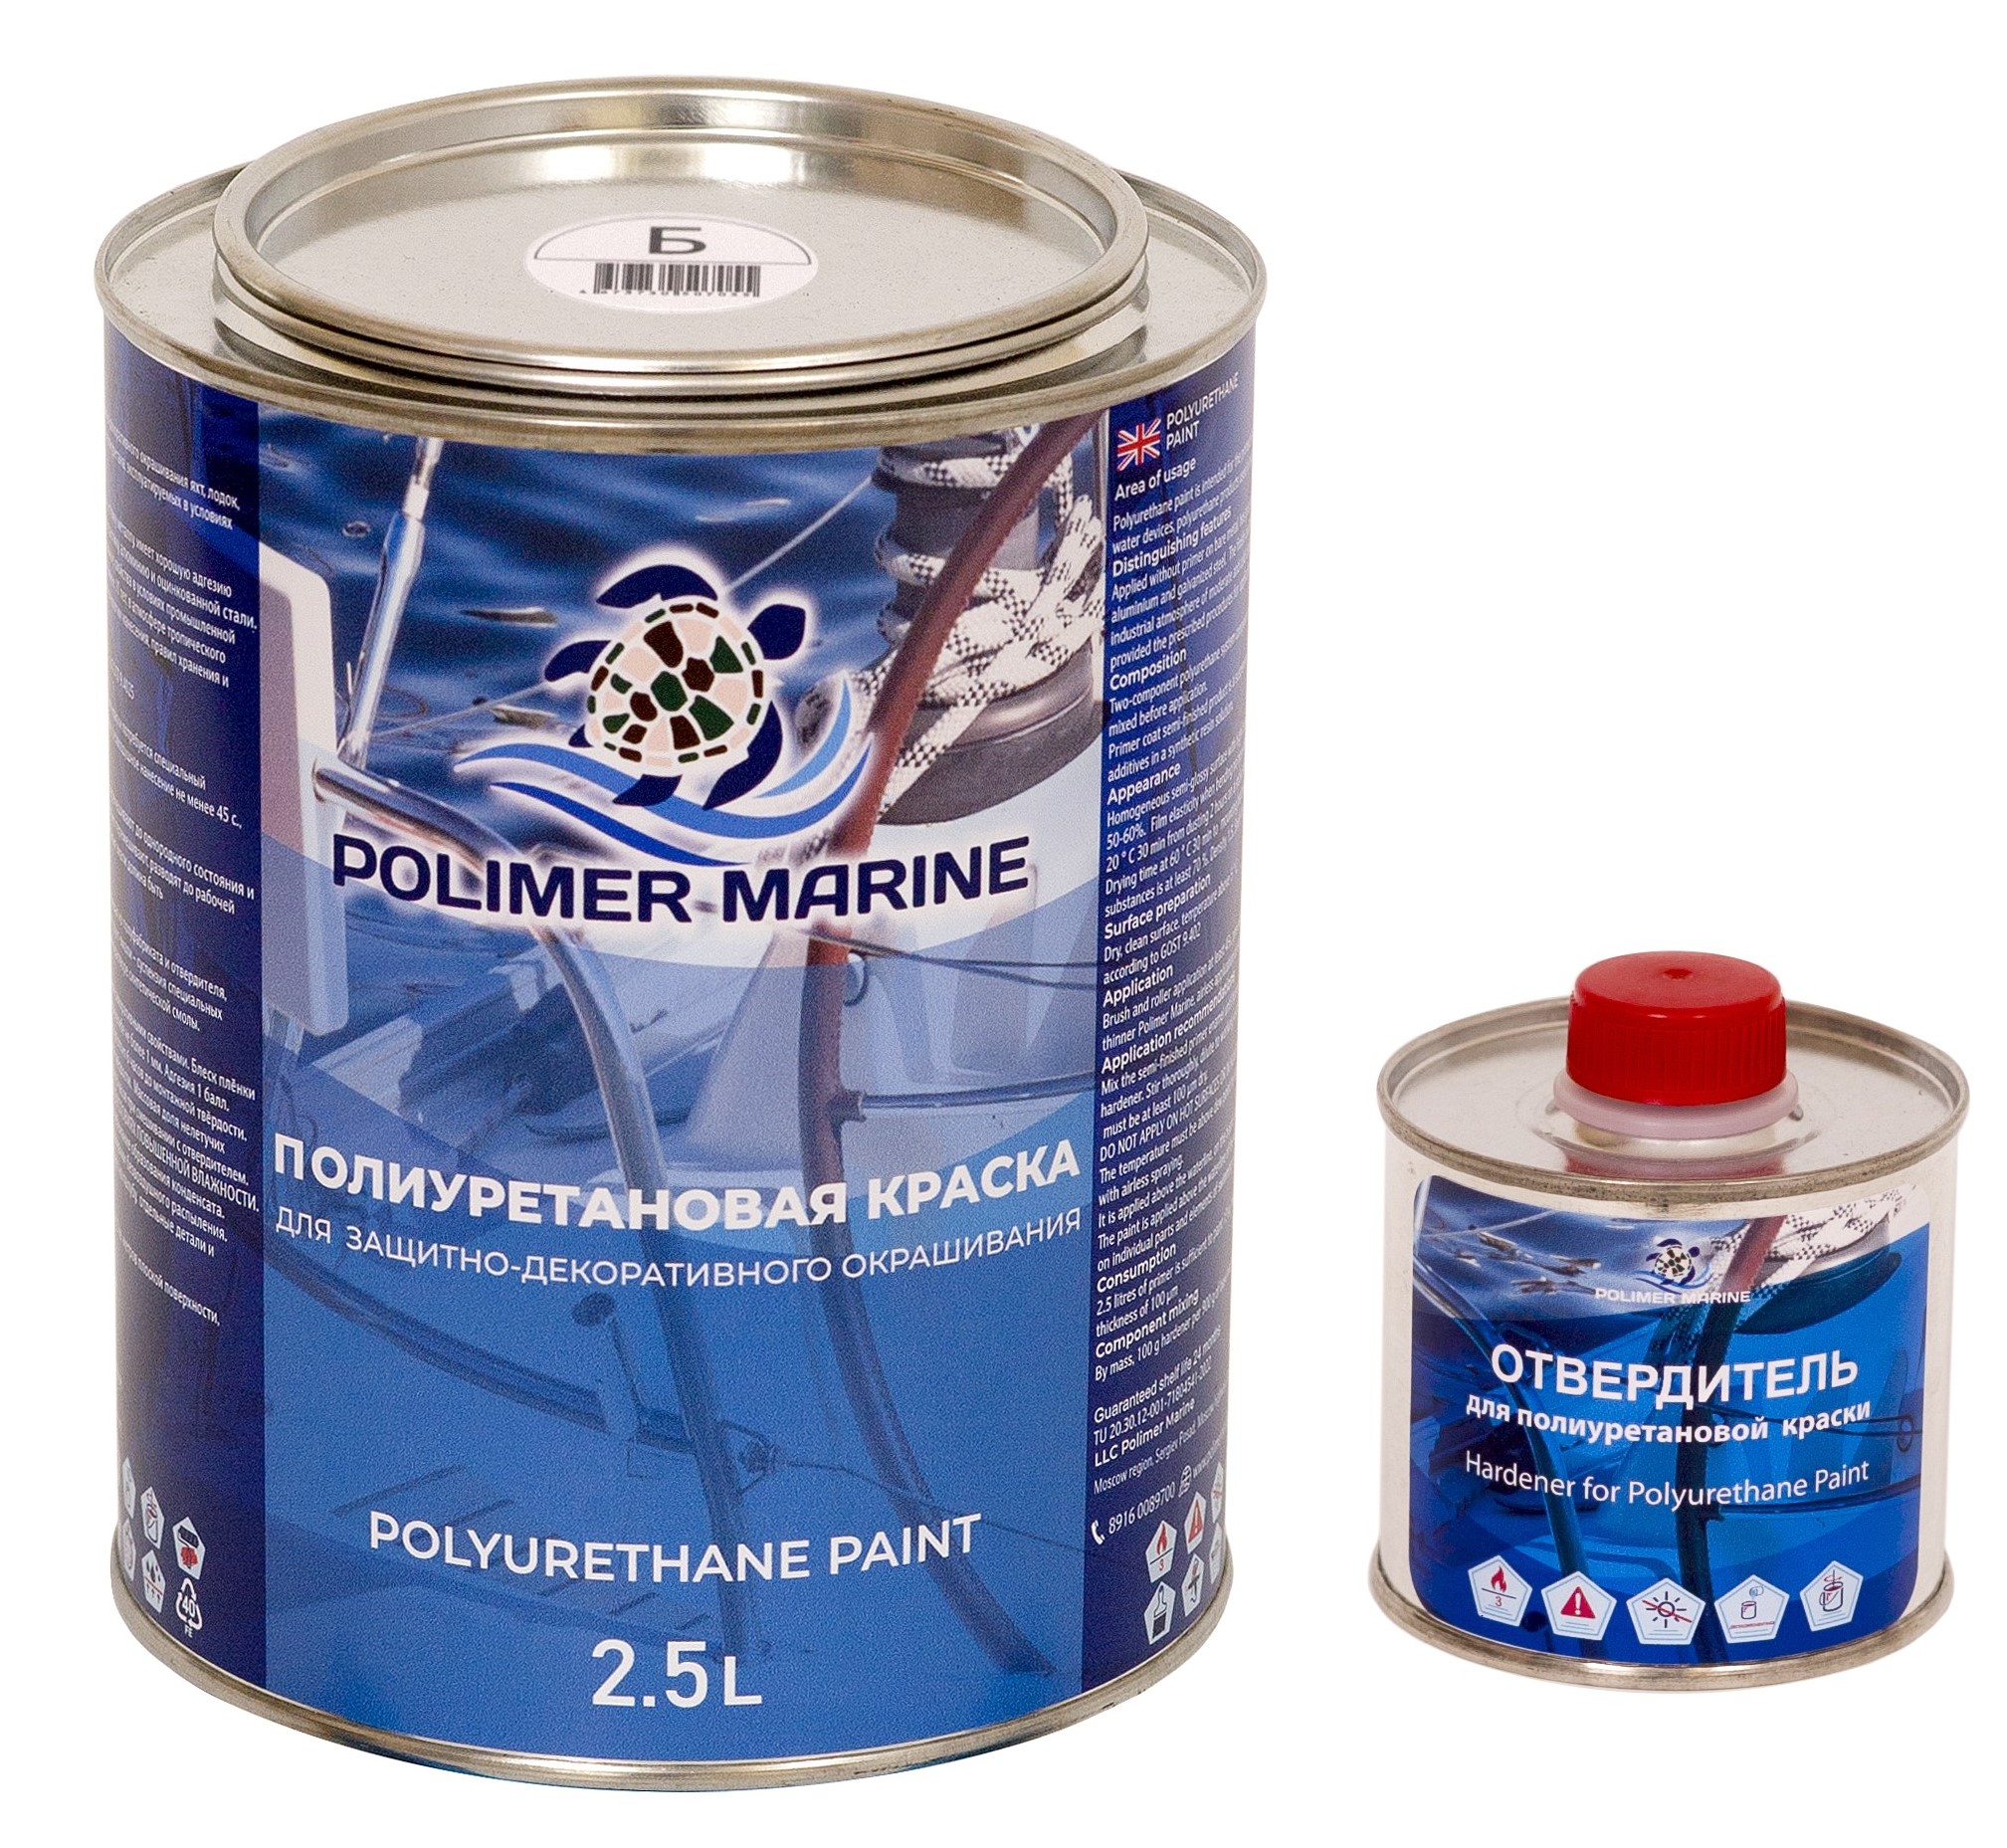 Полиуретановая краска Polimer Marine КП Кп25б белая 2.5 л двухкомпонентная 2К полиуретановая краска polimer marine двухкомпонентная 2к